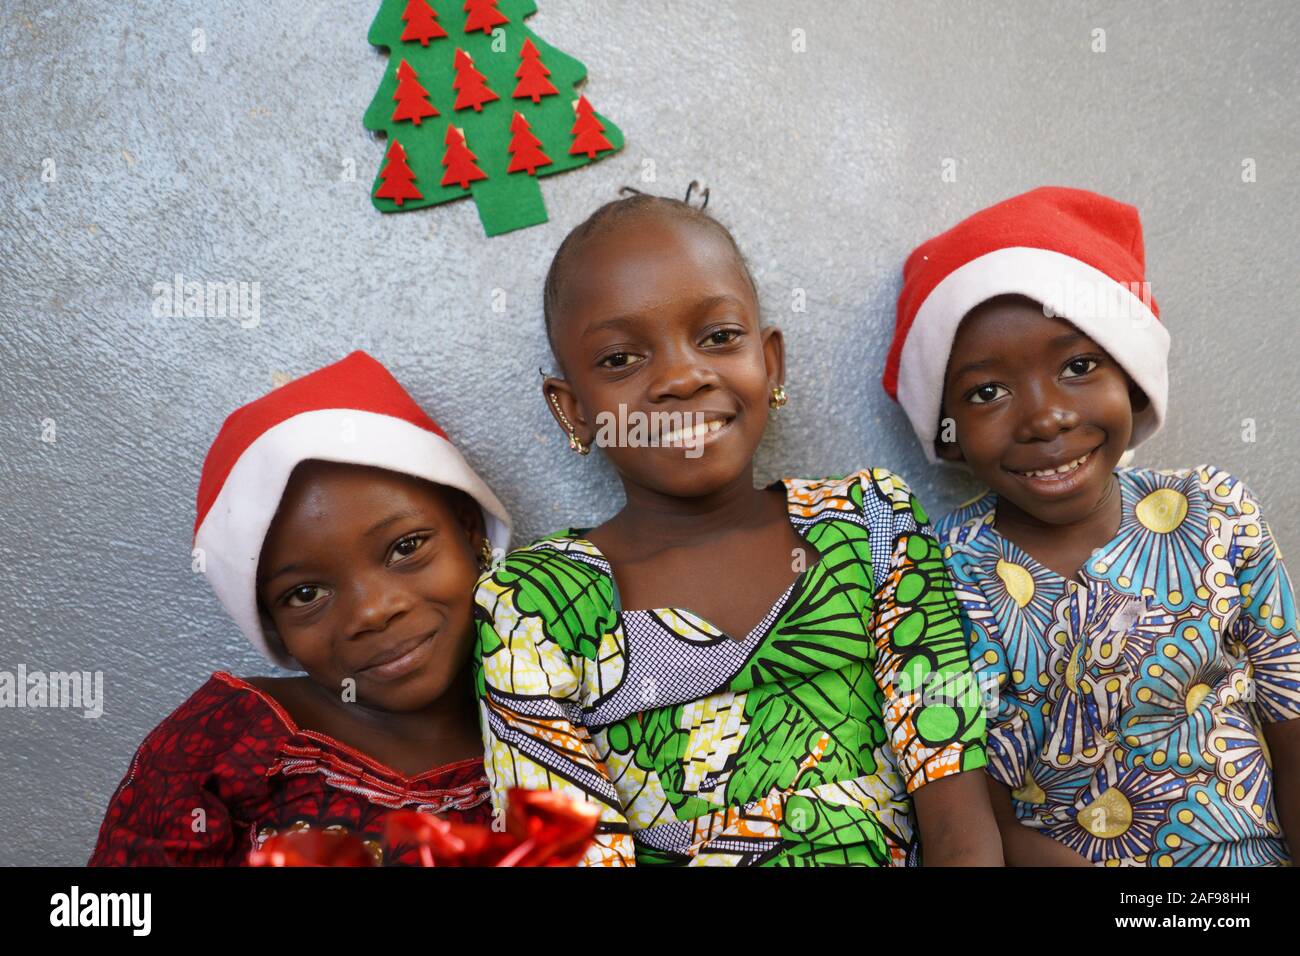 Los niños y niñas celebran la Navidad juntos sonriendo y riendo Foto de stock